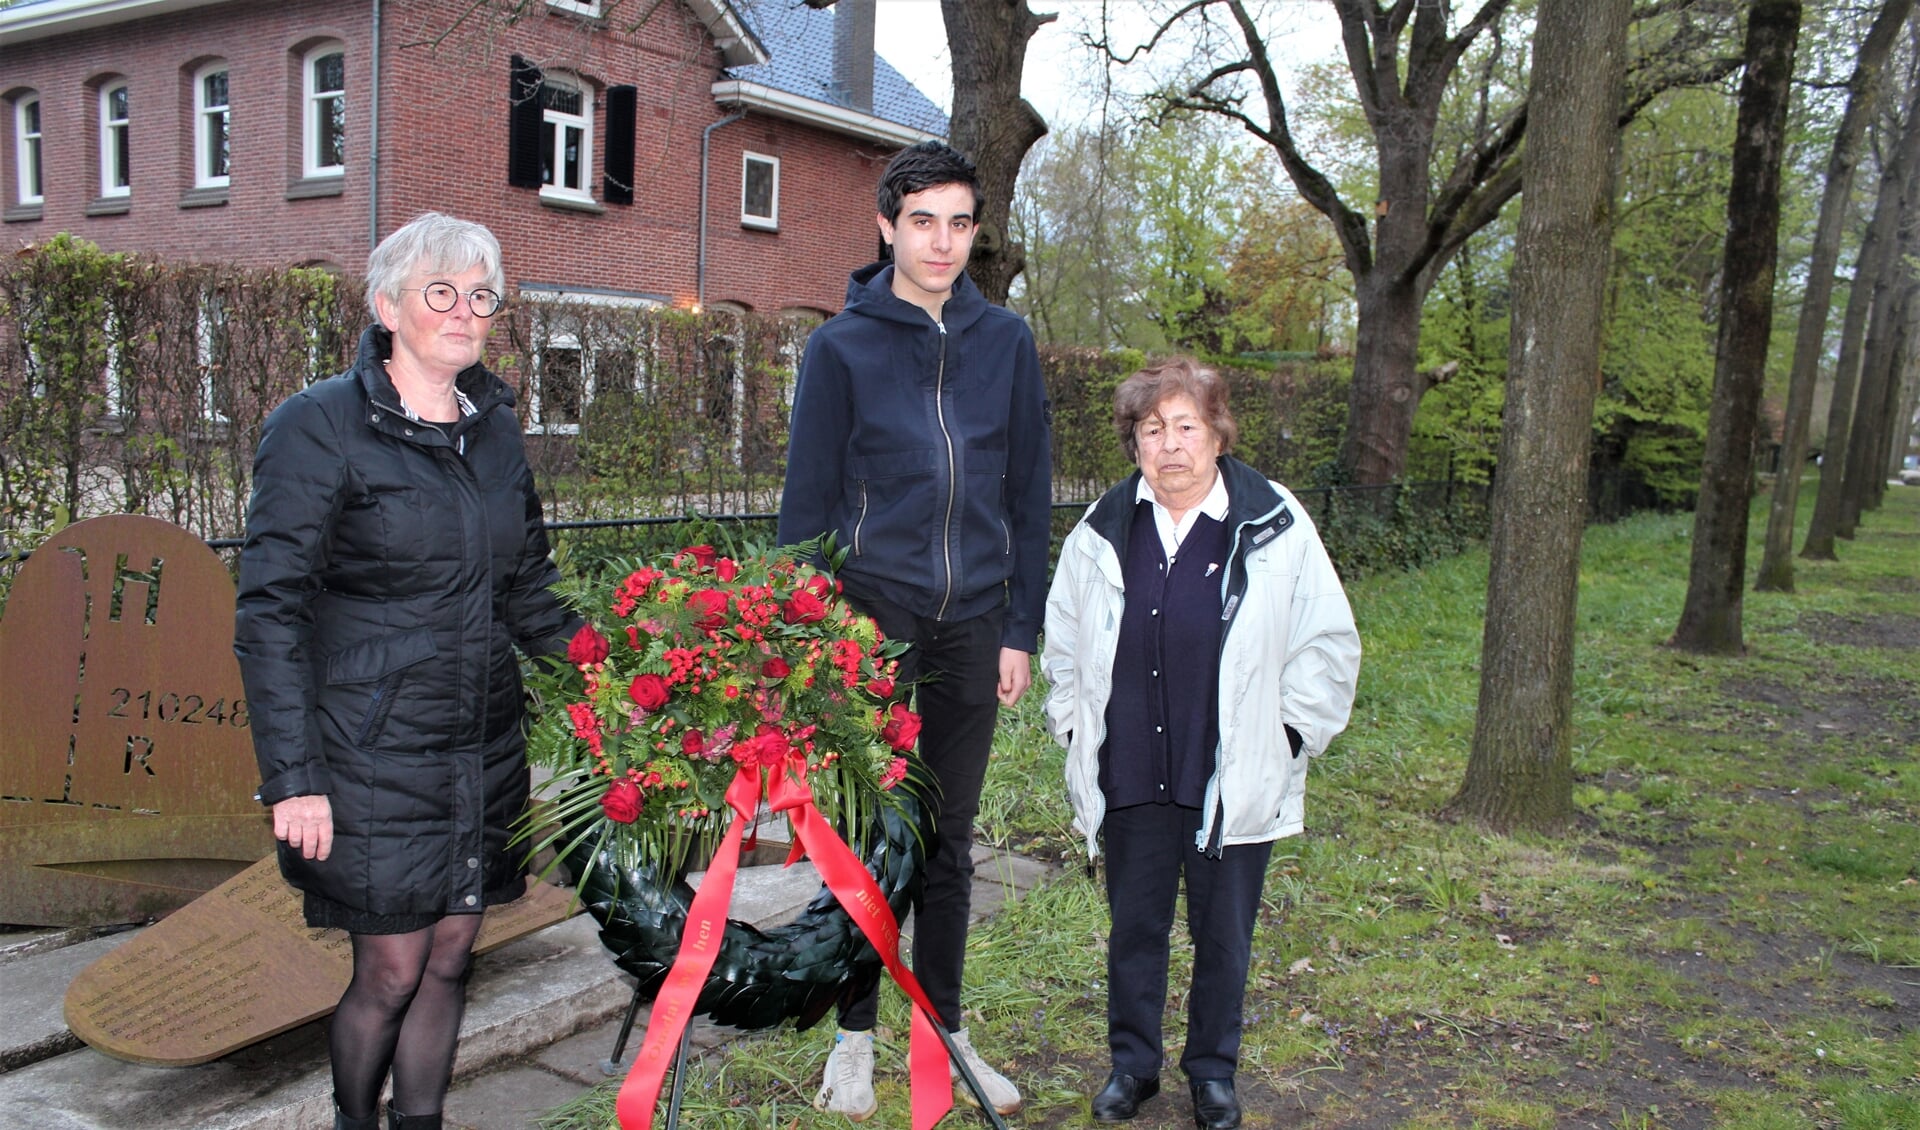 Namens de Werkgroep 4 mei legden Coby Merkens, Jasper de Vries en Marjan Bosma, een bloemstuk bij het B 17-monument in Groenekan. [foto Henk van de Bunt]